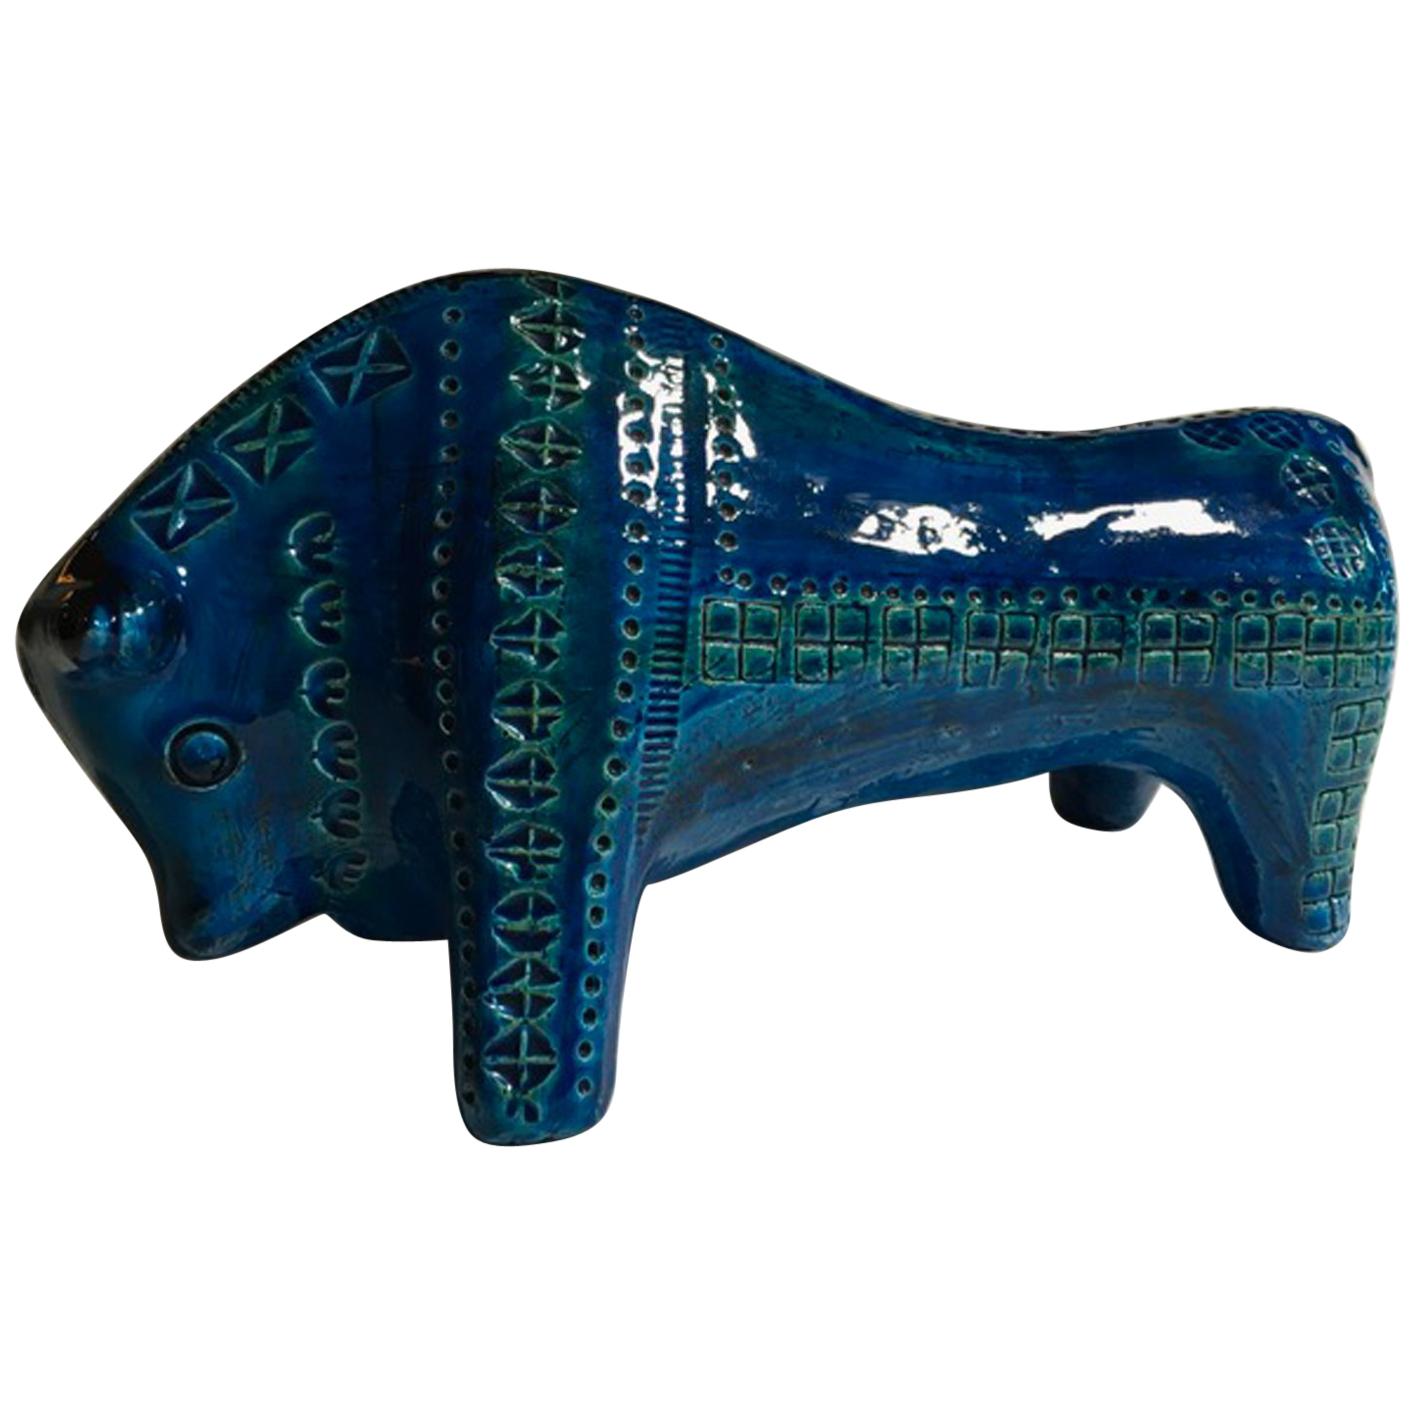 1980 Post-Modern Italian Design Bull in Turquoise Enameled Ceramic